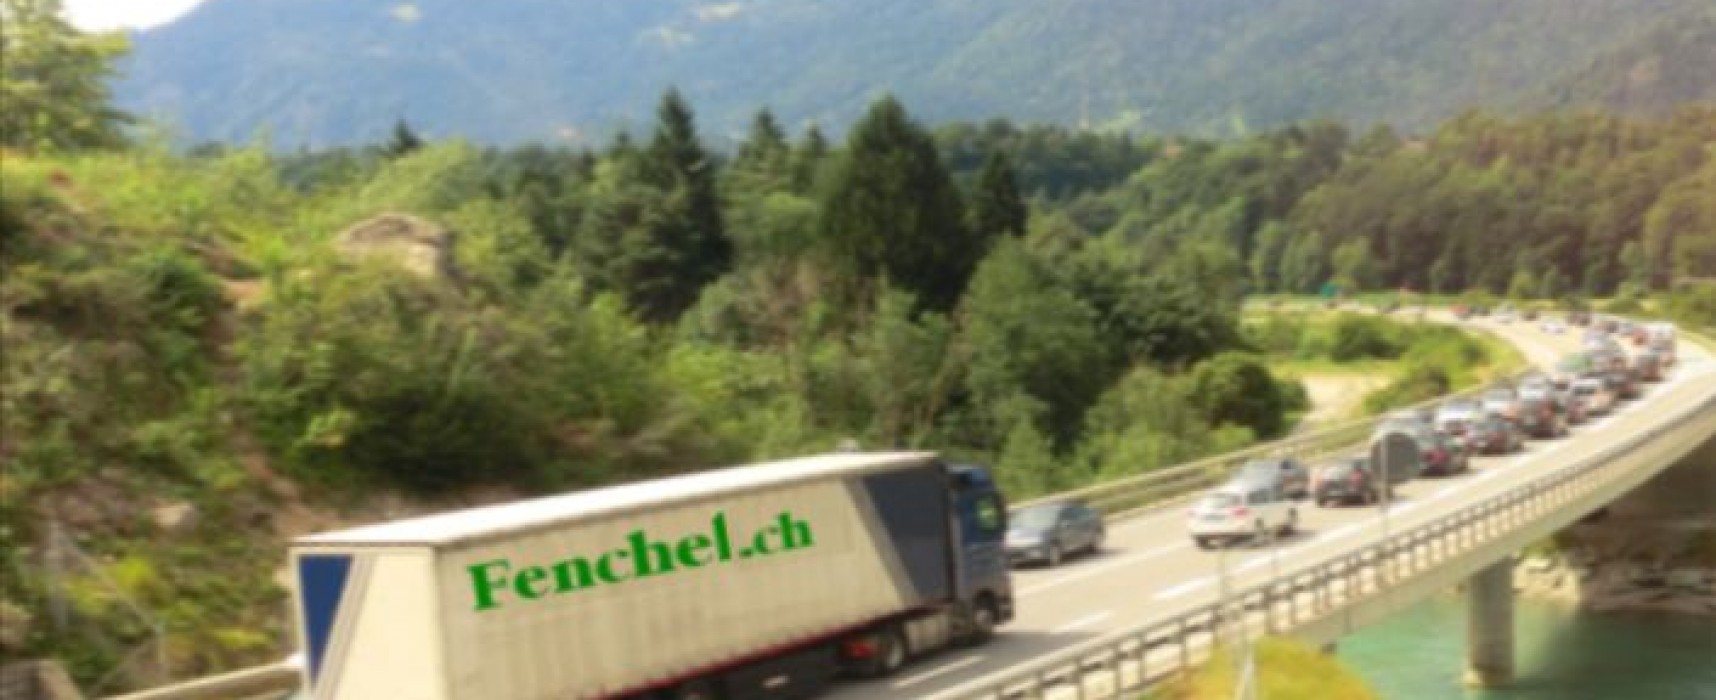 Bonaduz: Verkehrsumleitung A13 wegen Bauarbeiten